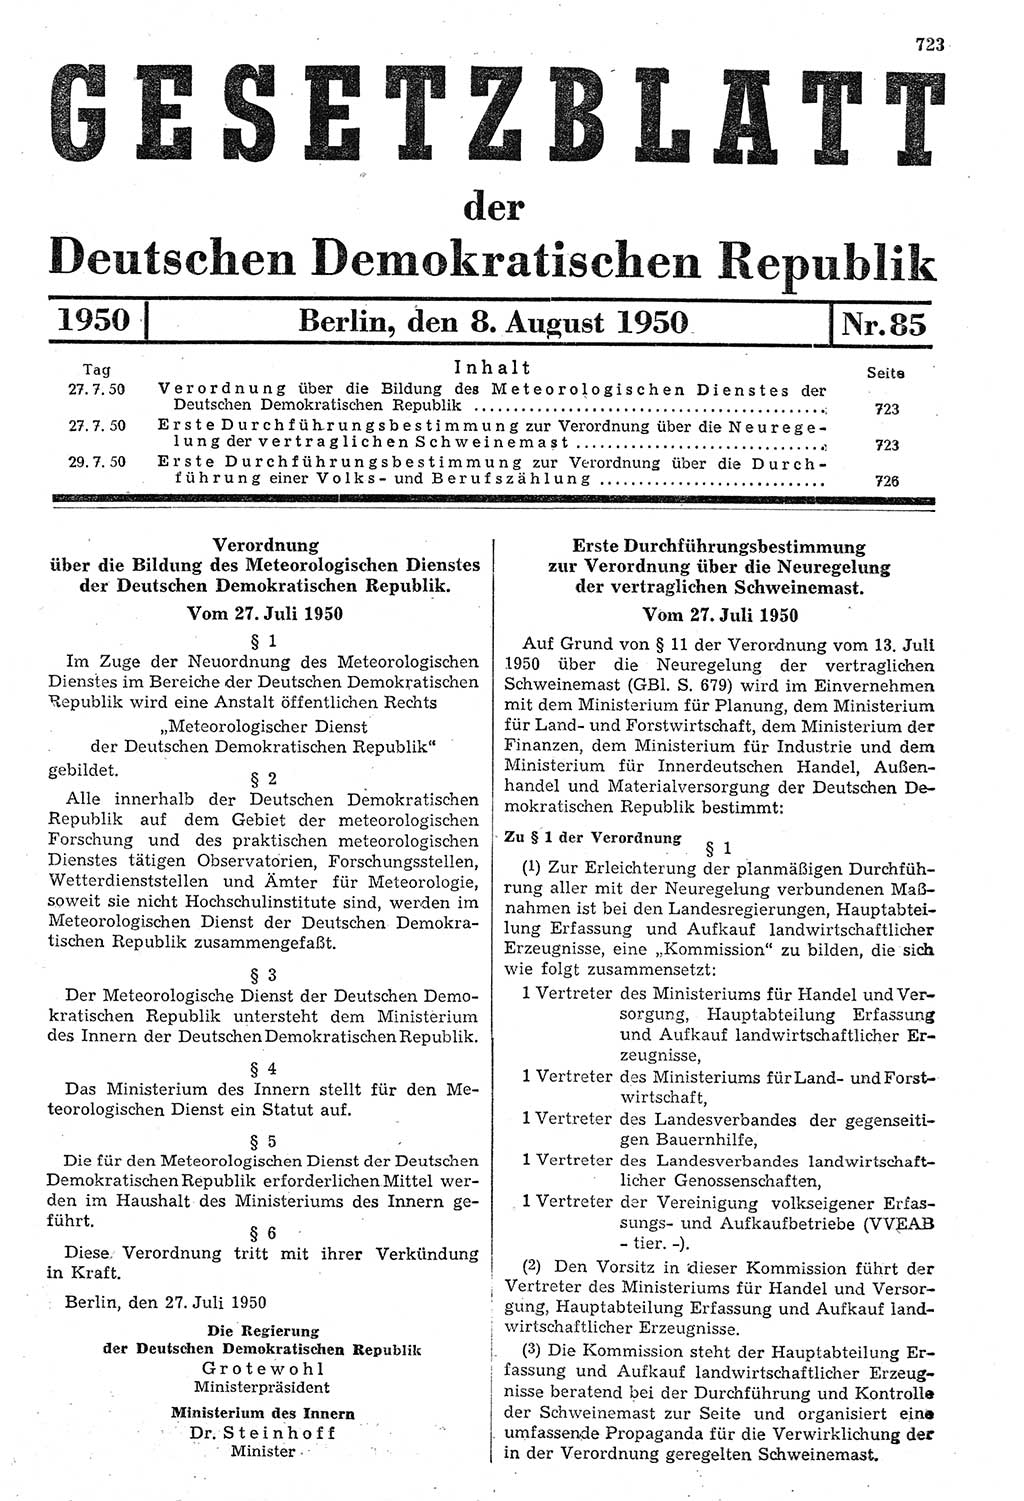 Gesetzblatt (GBl.) der Deutschen Demokratischen Republik (DDR) 1950, Seite 723 (GBl. DDR 1950, S. 723)